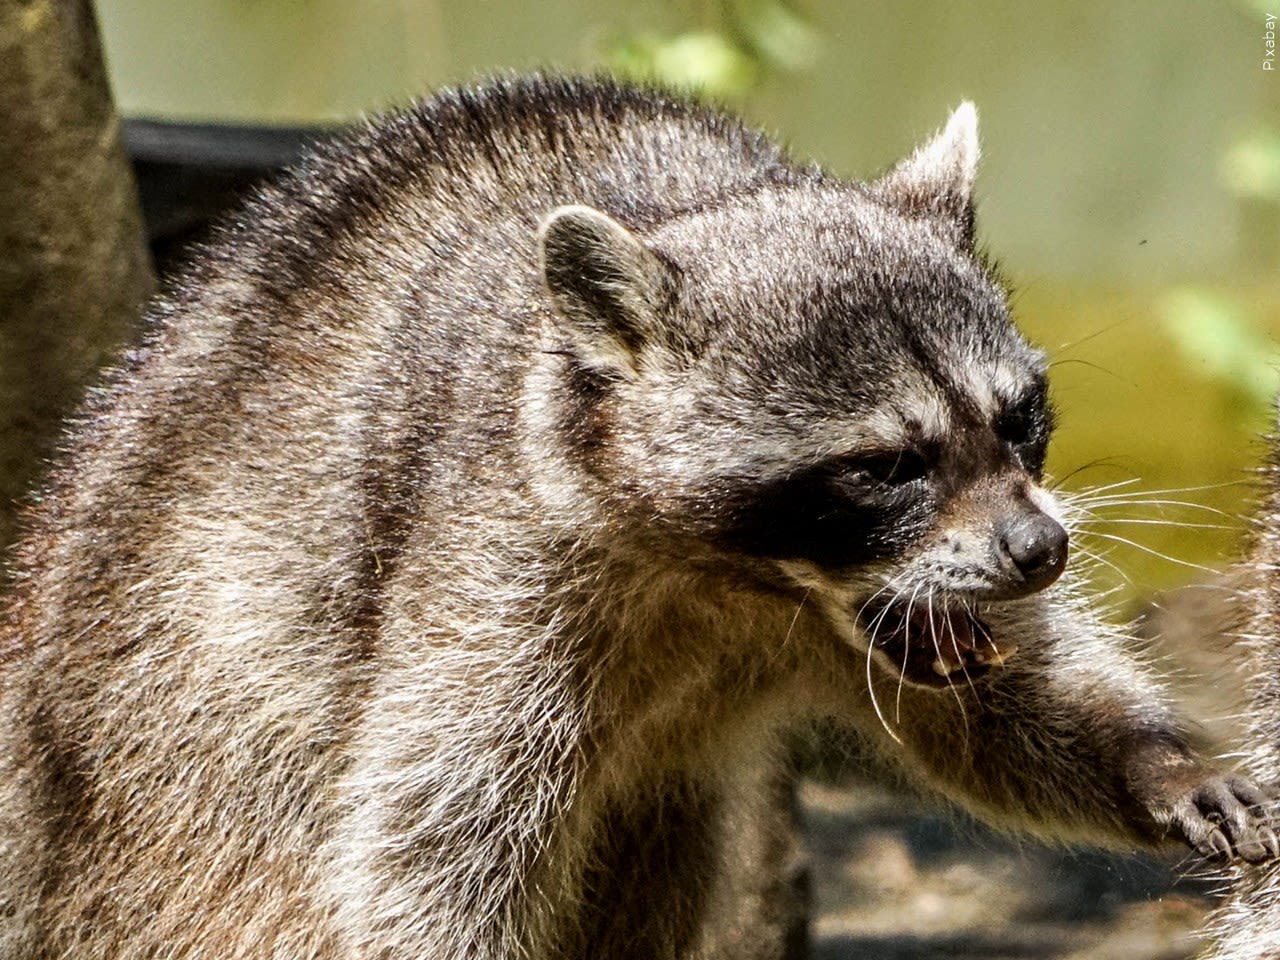 Officials warn of rabid raccoon in Dartmouth area | ABC6